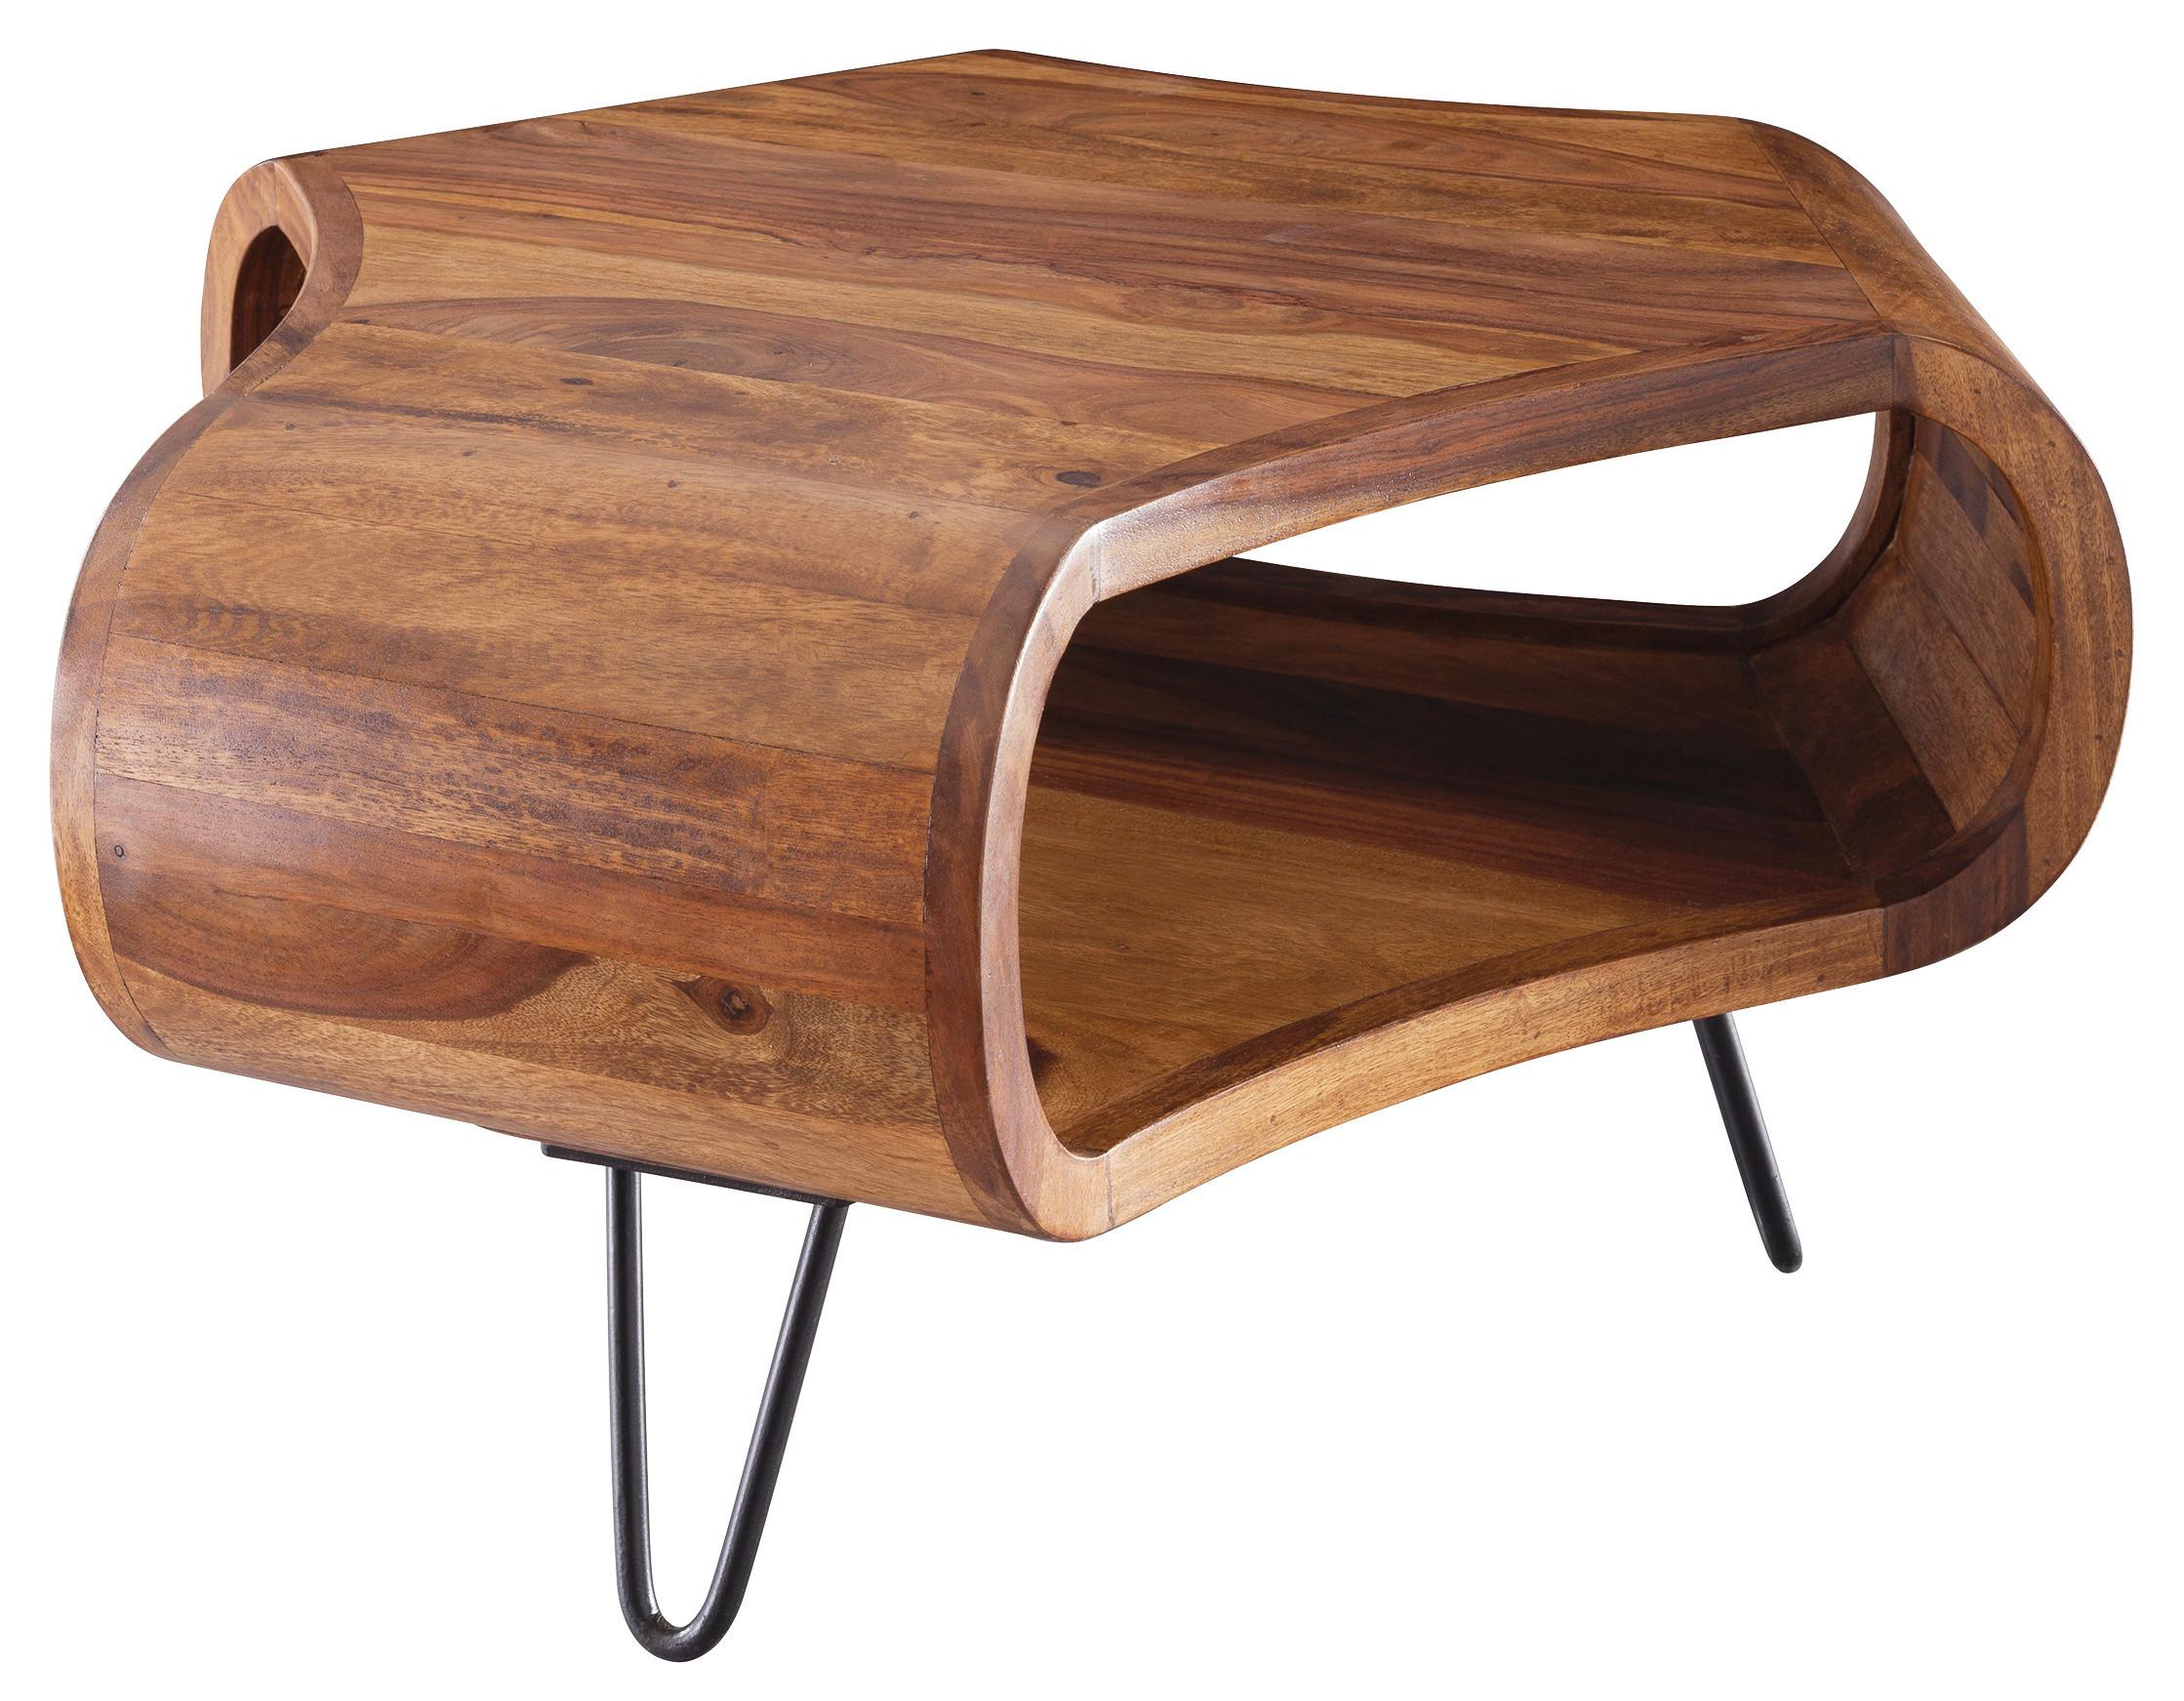 Konferenčný Stolík Wl5.603 Masív - čierna/farby sheesham, Design, kov/drevo (55/55/38cm) - MID.YOU